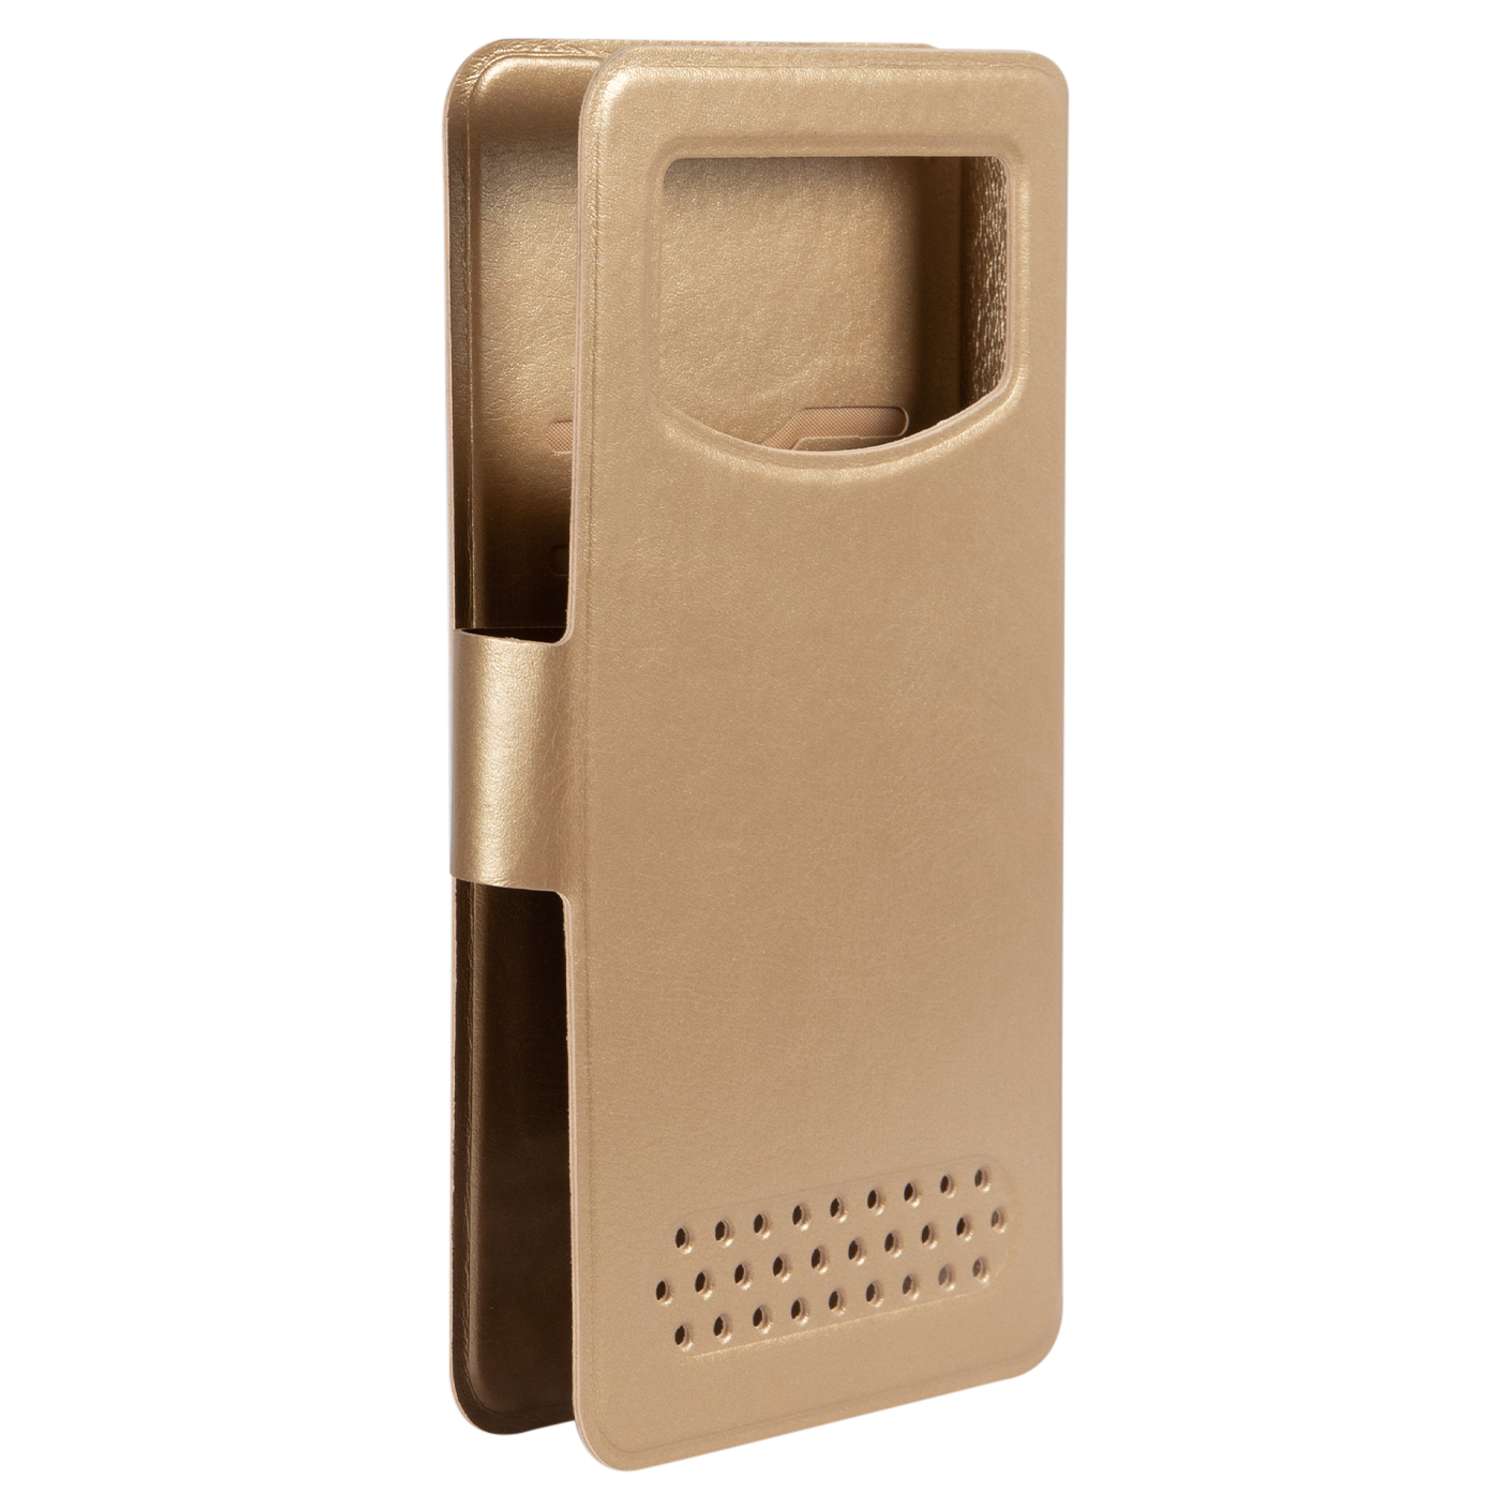 Чехол универсальный iBox Universal для телефонов 5-6 дюйма золотой - фото 3